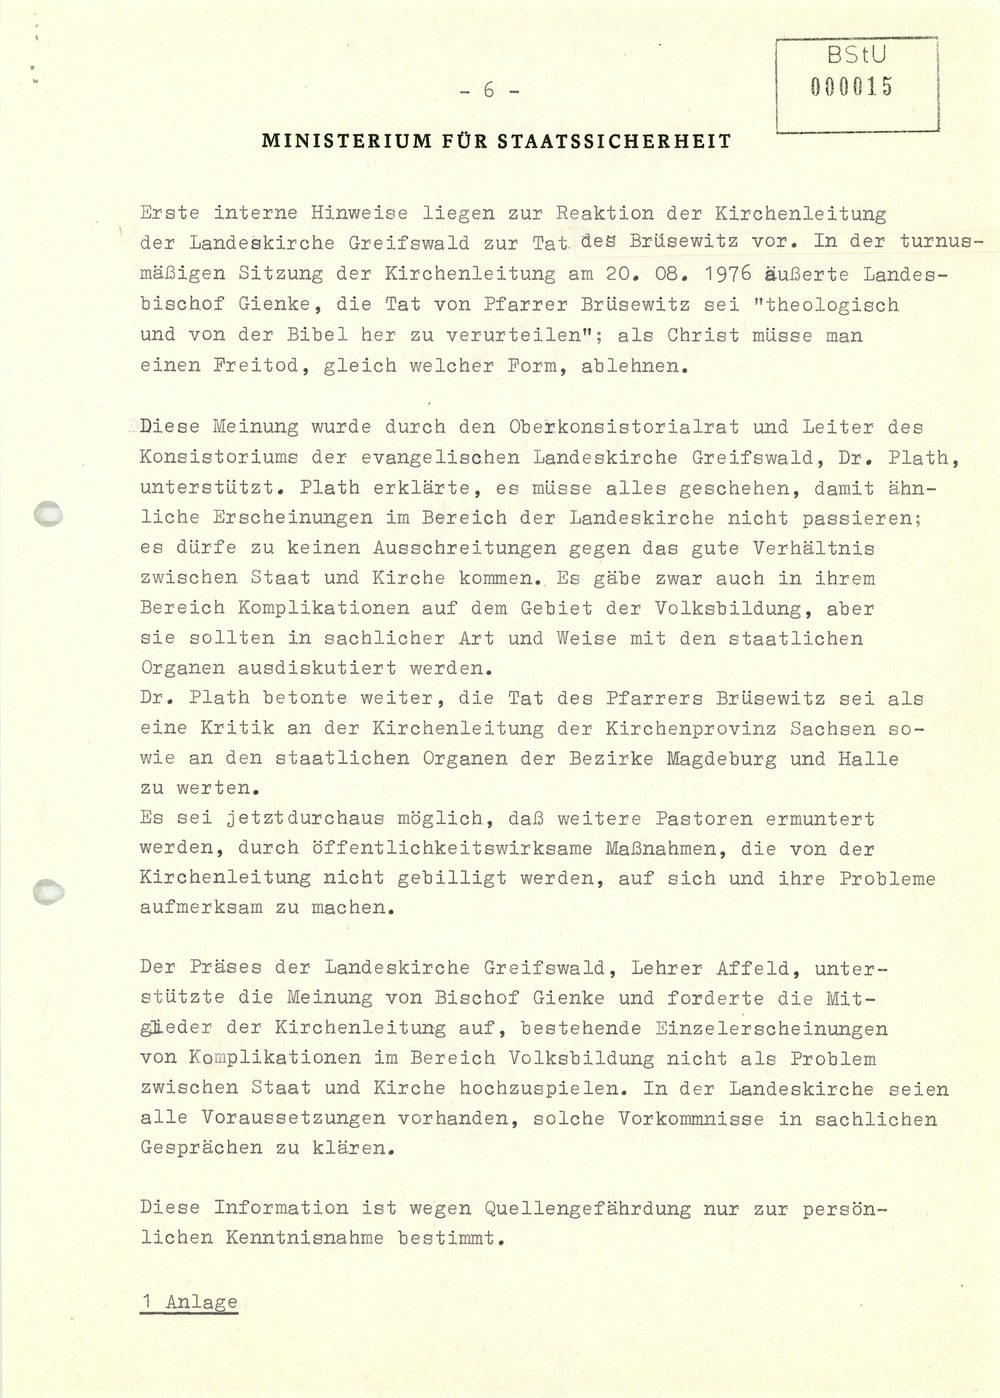 Zur Beisetzung Von Pfarrer Brusewitz Am 26 8 1976 In Rippicha Kreis Zeitz Mediathek Des Stasi Unterlagen Archivs